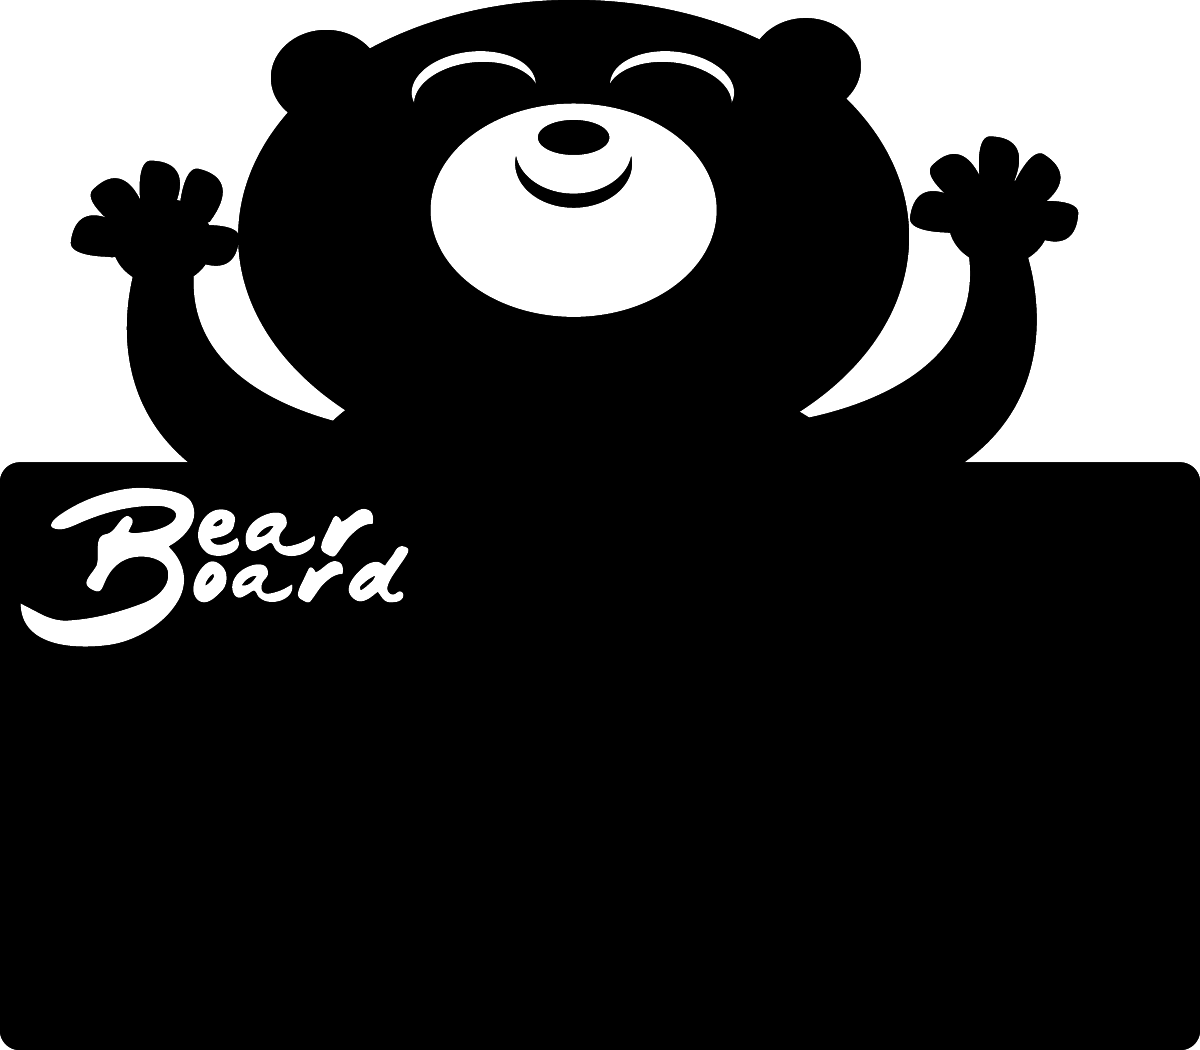 Stickers for Kids: Blackboard of the happy bear